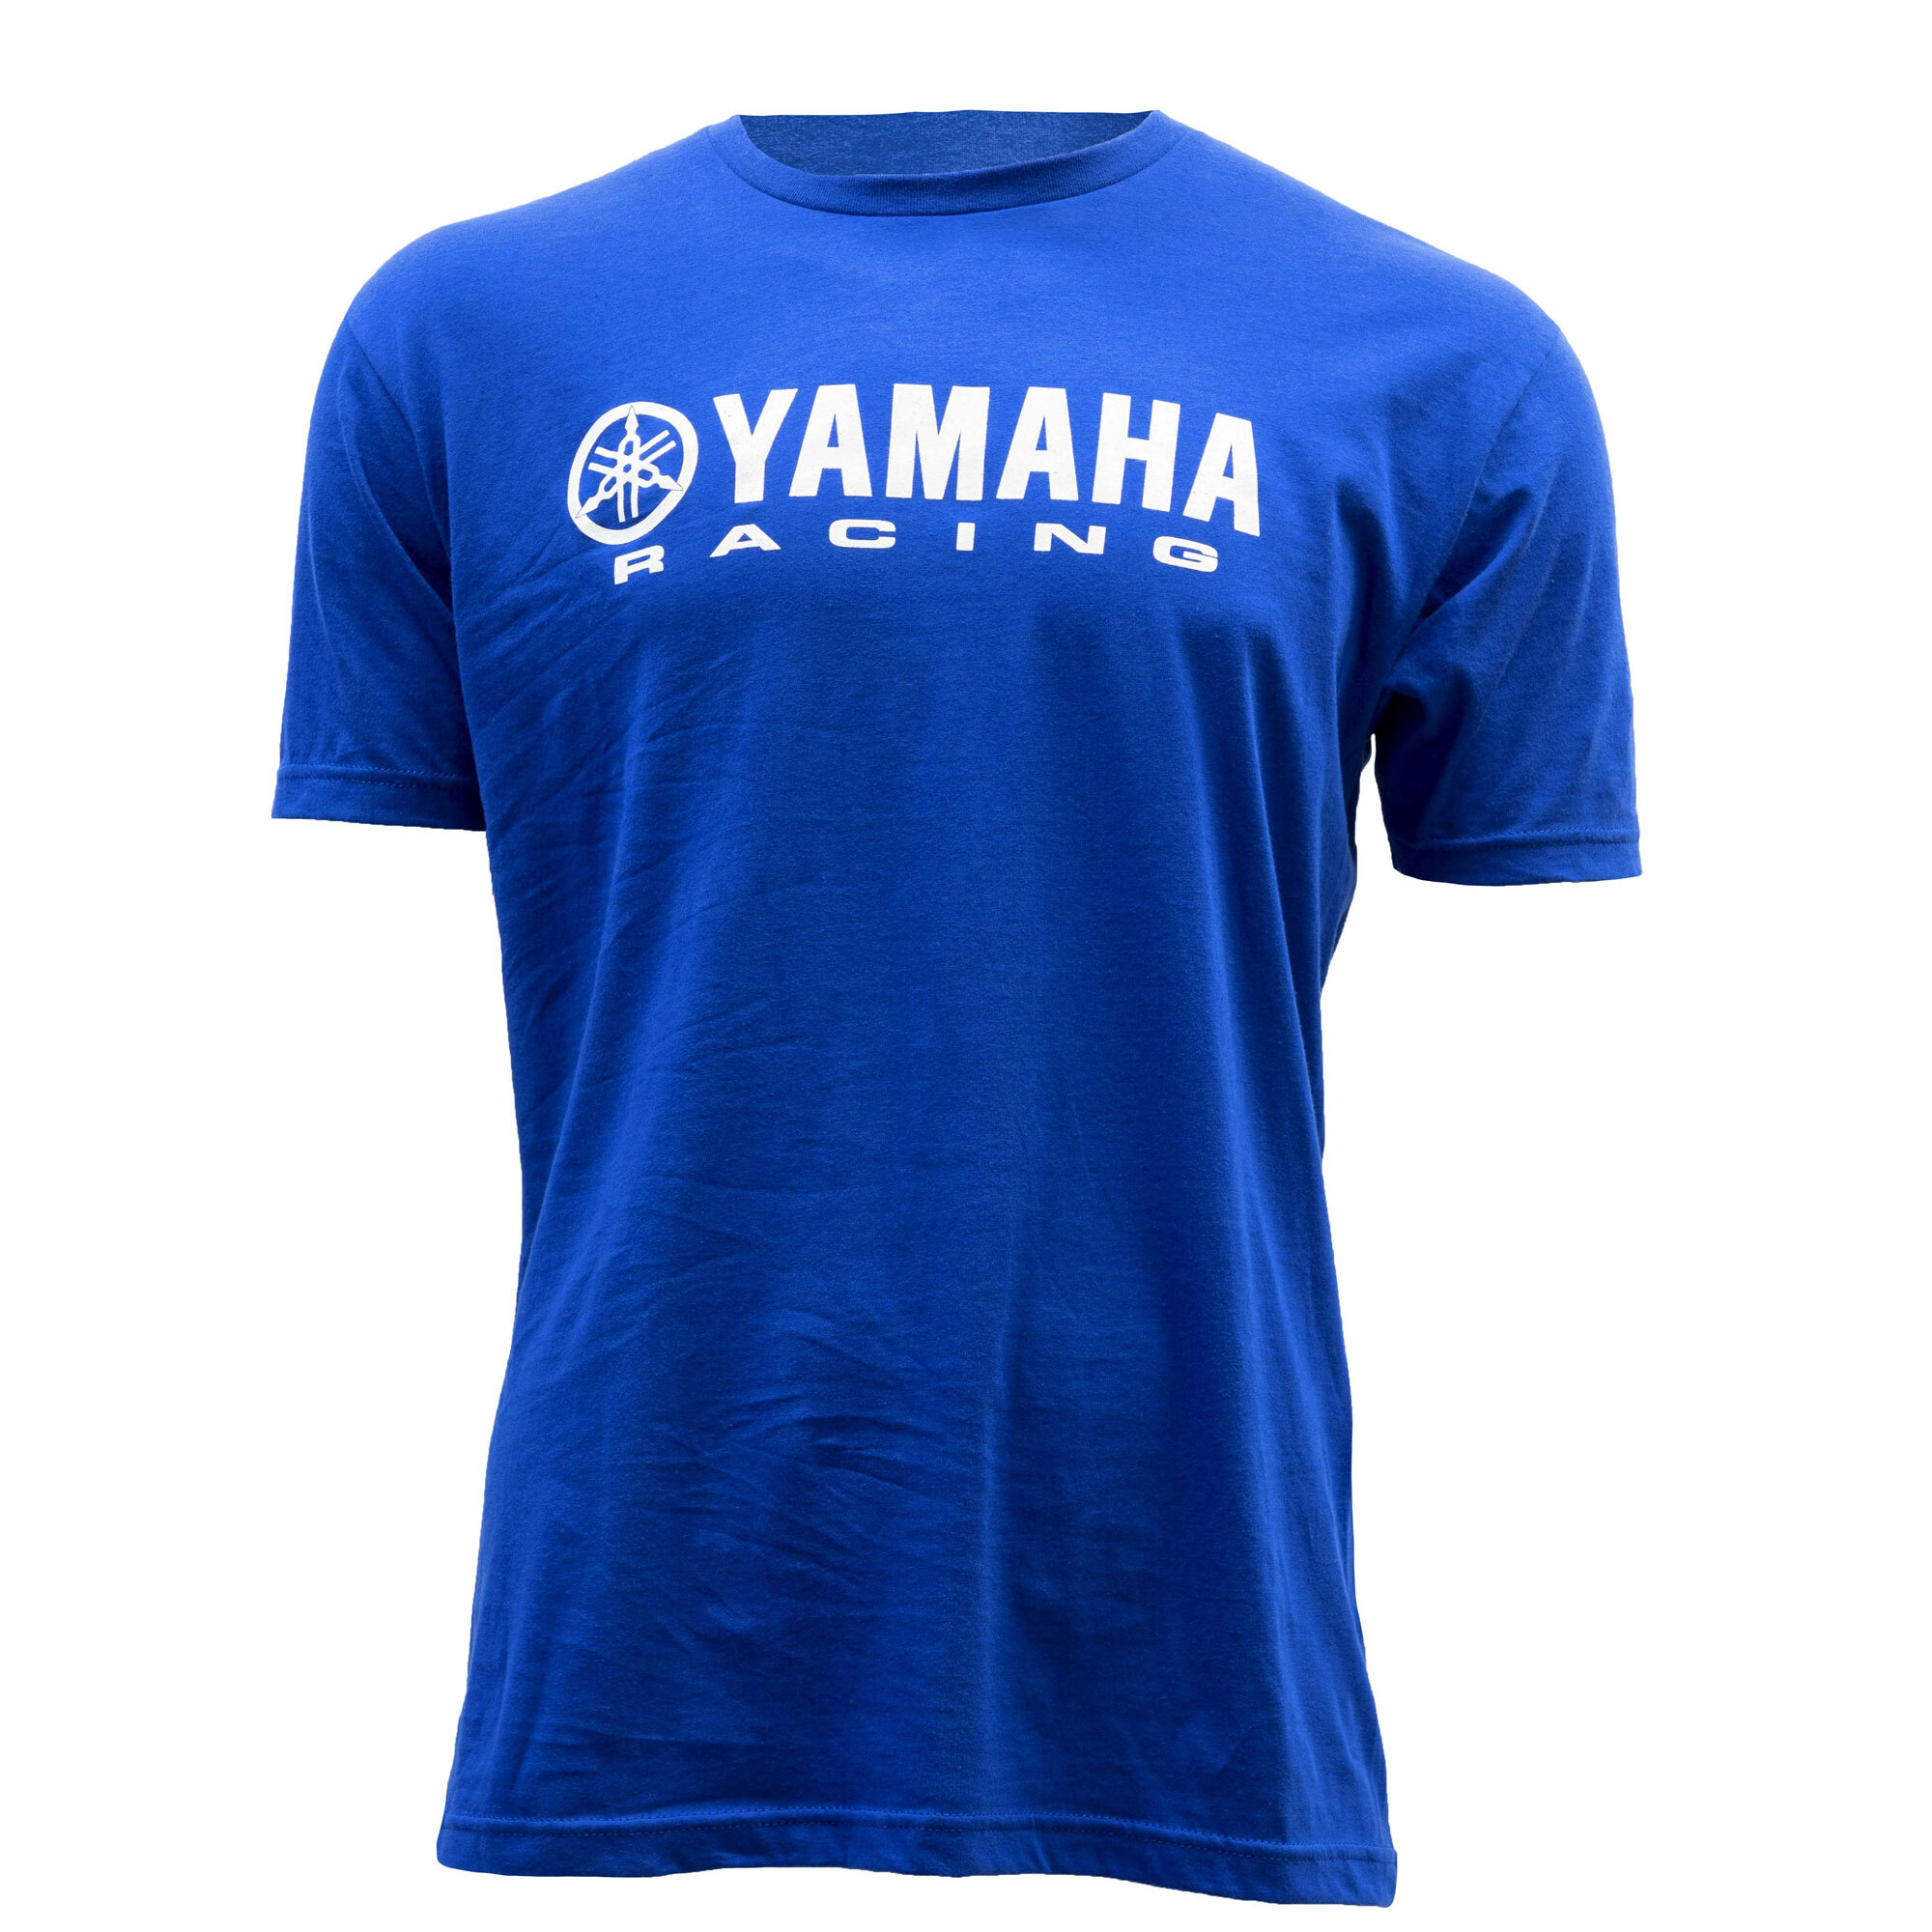 Yamaha Racing T Shirt